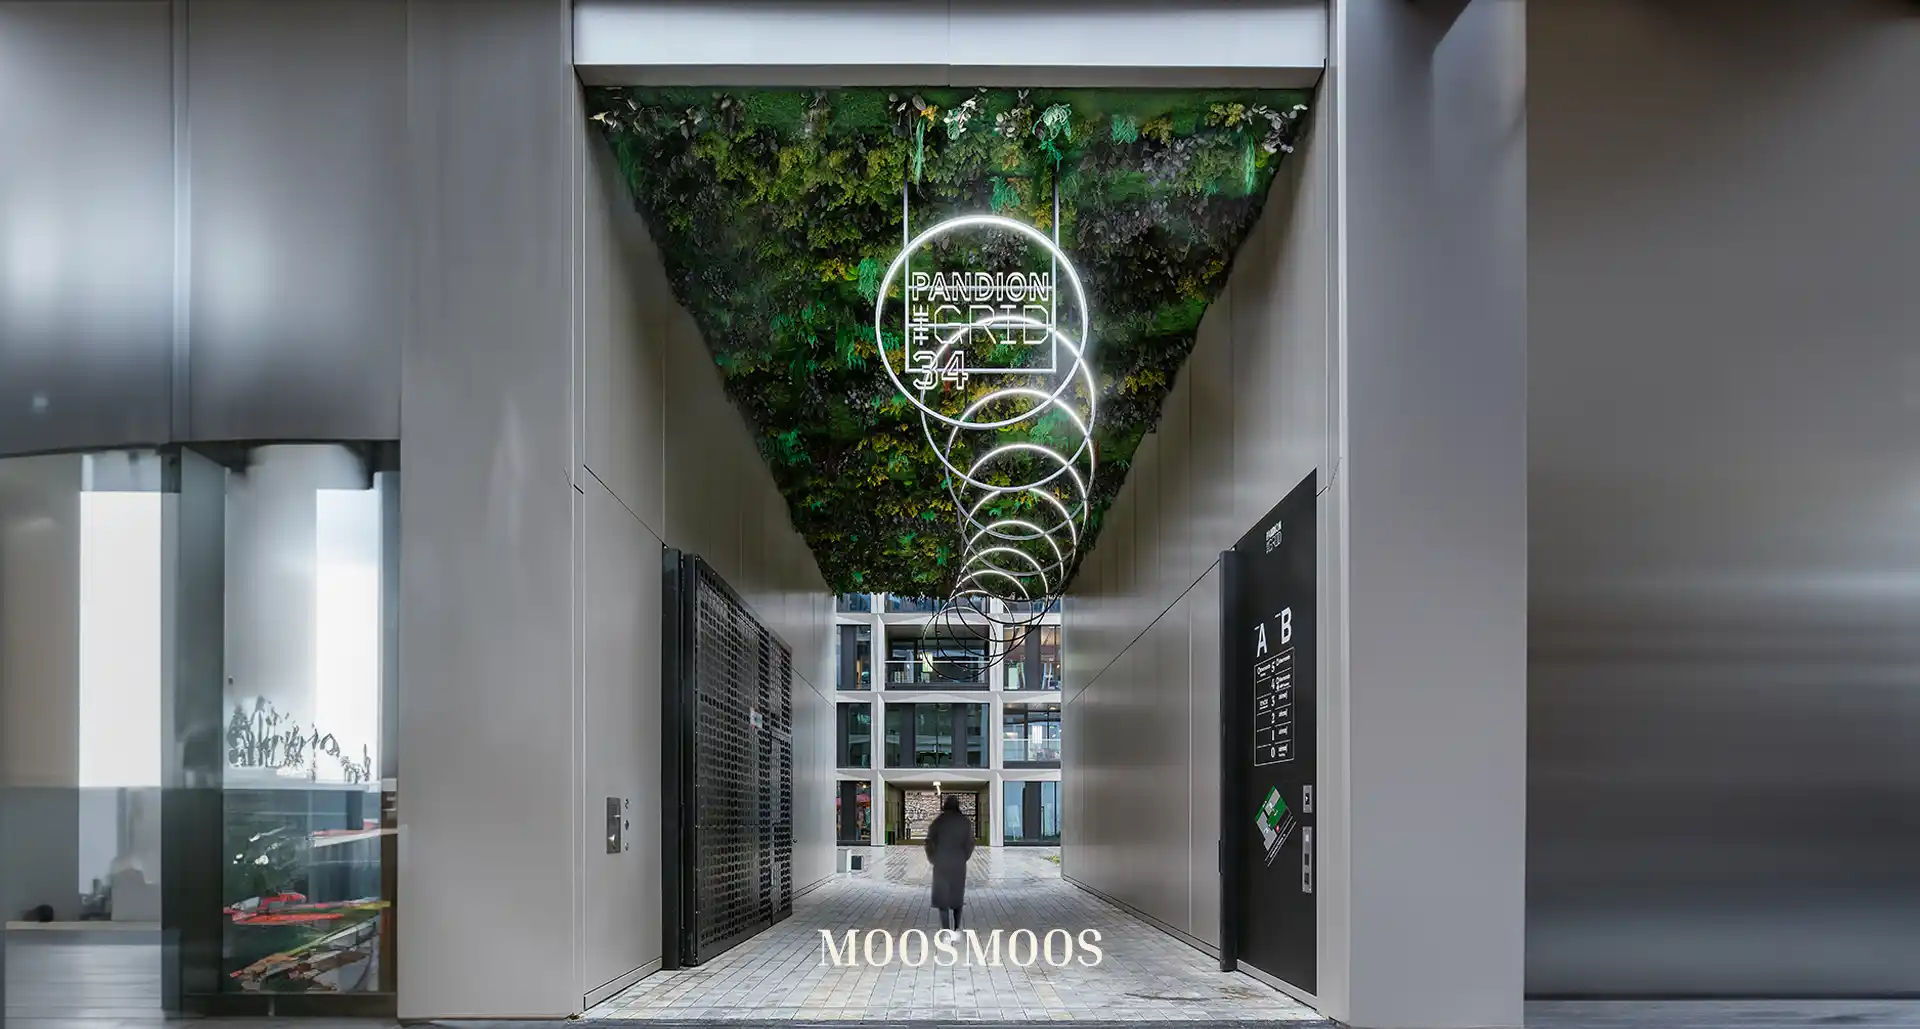 MOOSMOOS Deckenverkleidung / Mooswand an der Decke im Außenenbereich Durchgang mit Moos und Pflanzen